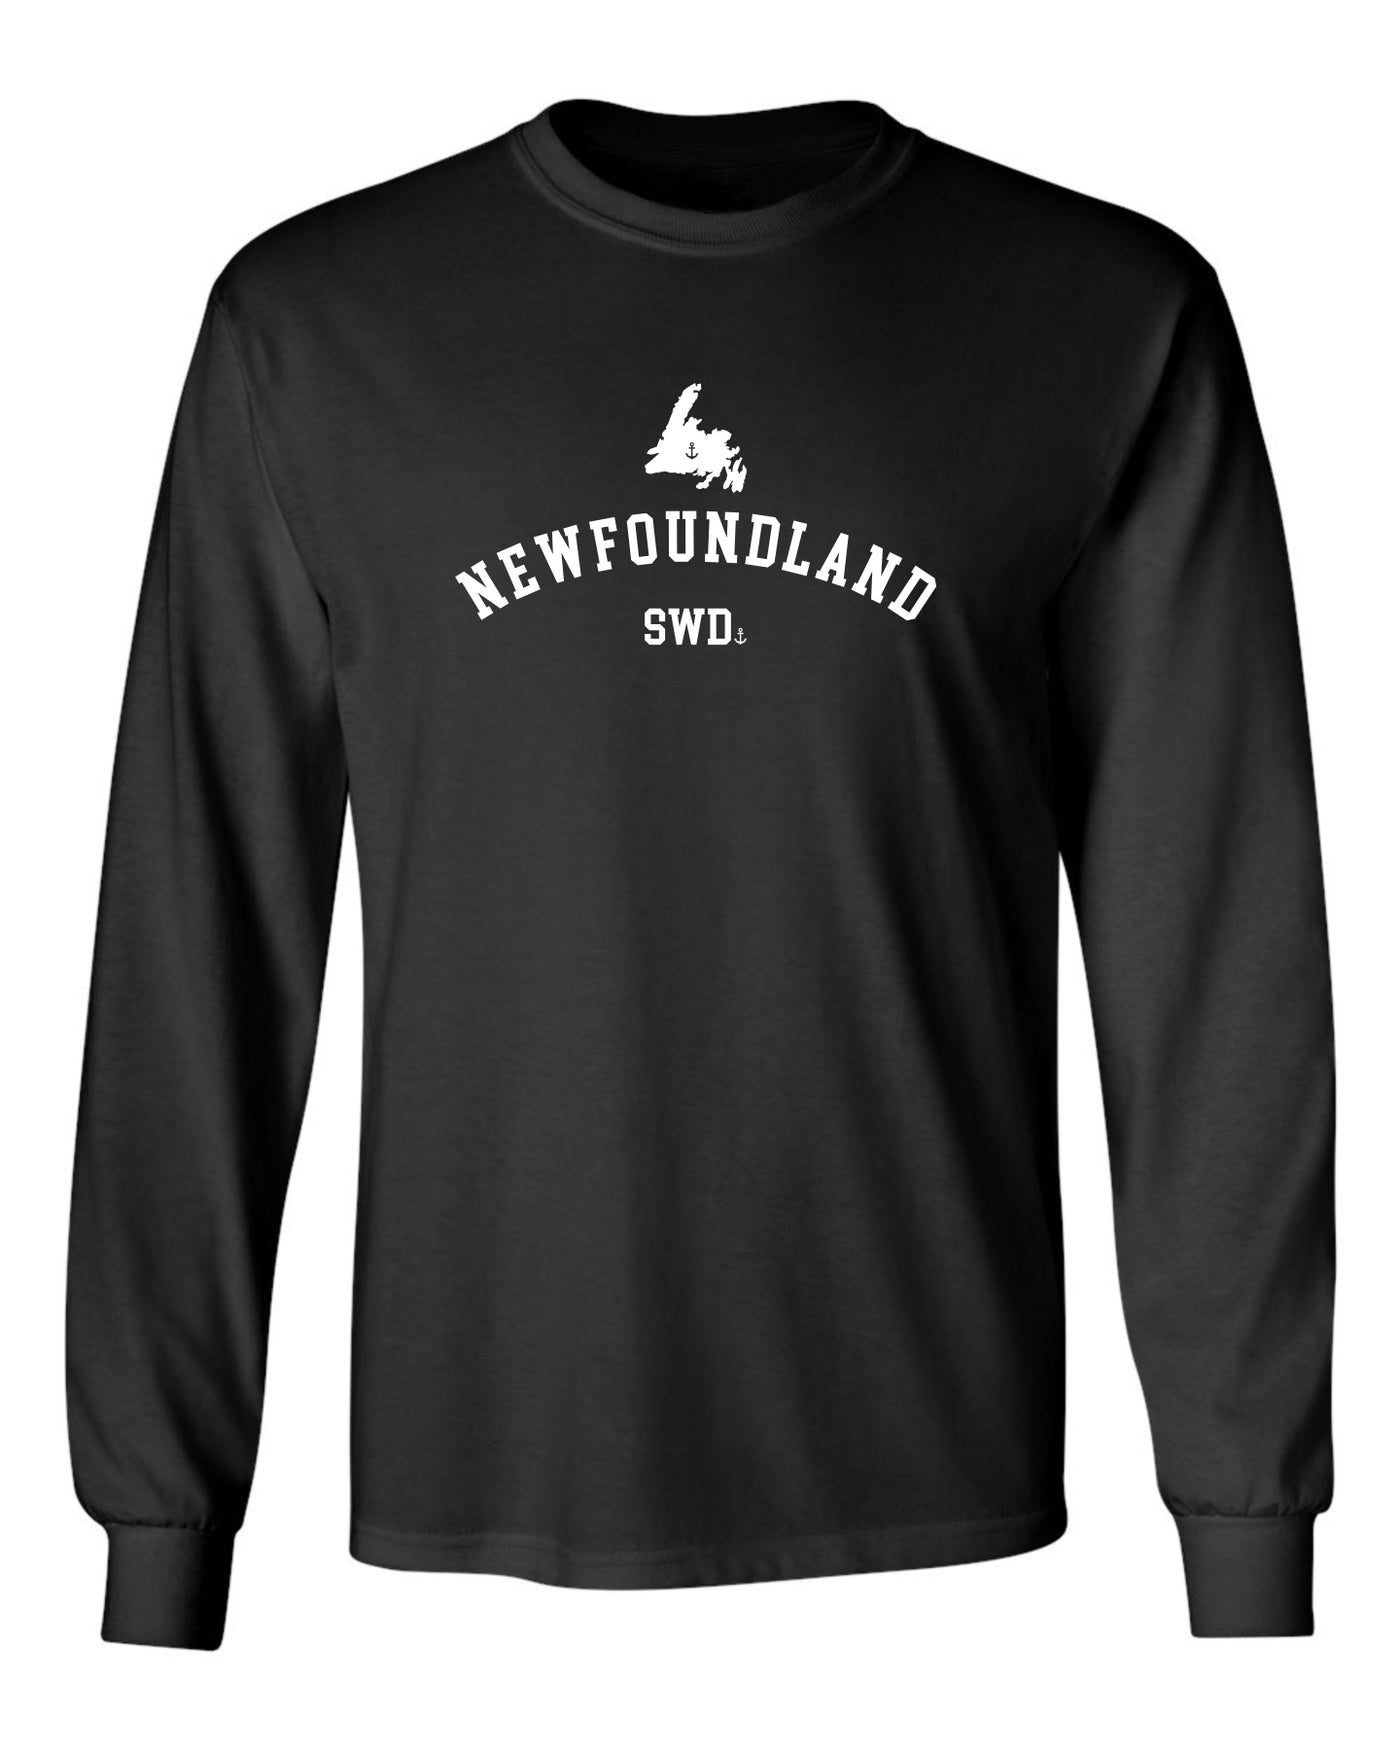 "Newfoundland - SWD" Unisex Long Sleeve Shirt